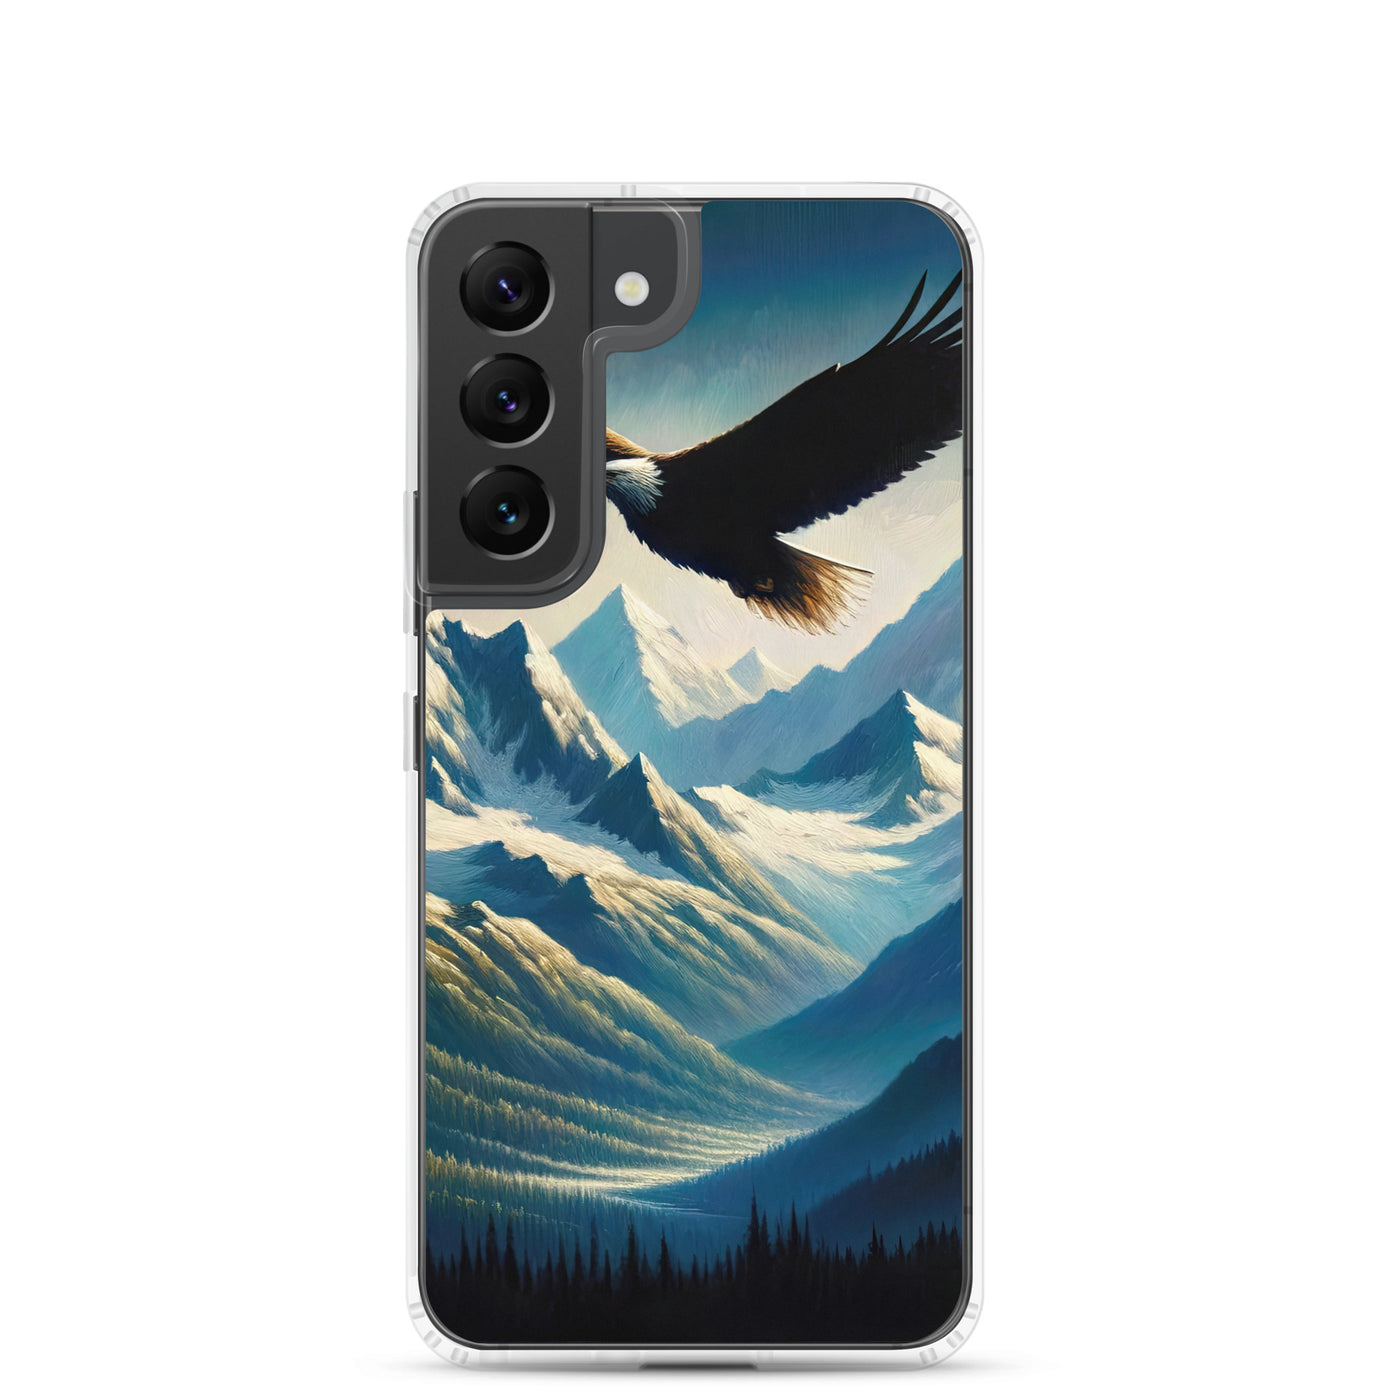 Ölgemälde eines Adlers vor schneebedeckten Bergsilhouetten - Samsung Schutzhülle (durchsichtig) berge xxx yyy zzz Samsung Galaxy S22